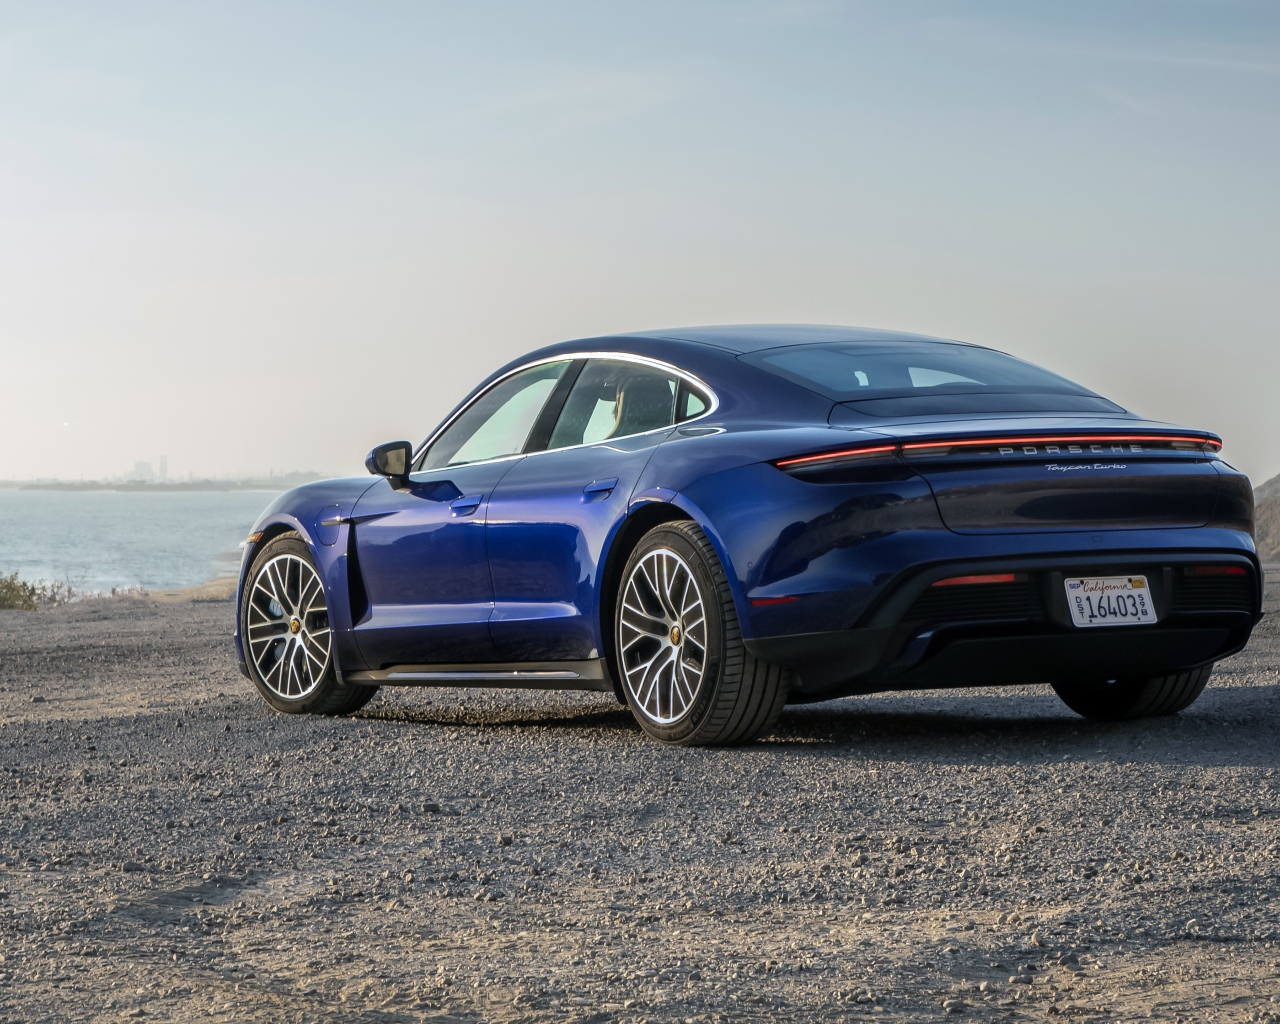 Синий автомобиль  Porsche Taycan, 2020 года вид сзади